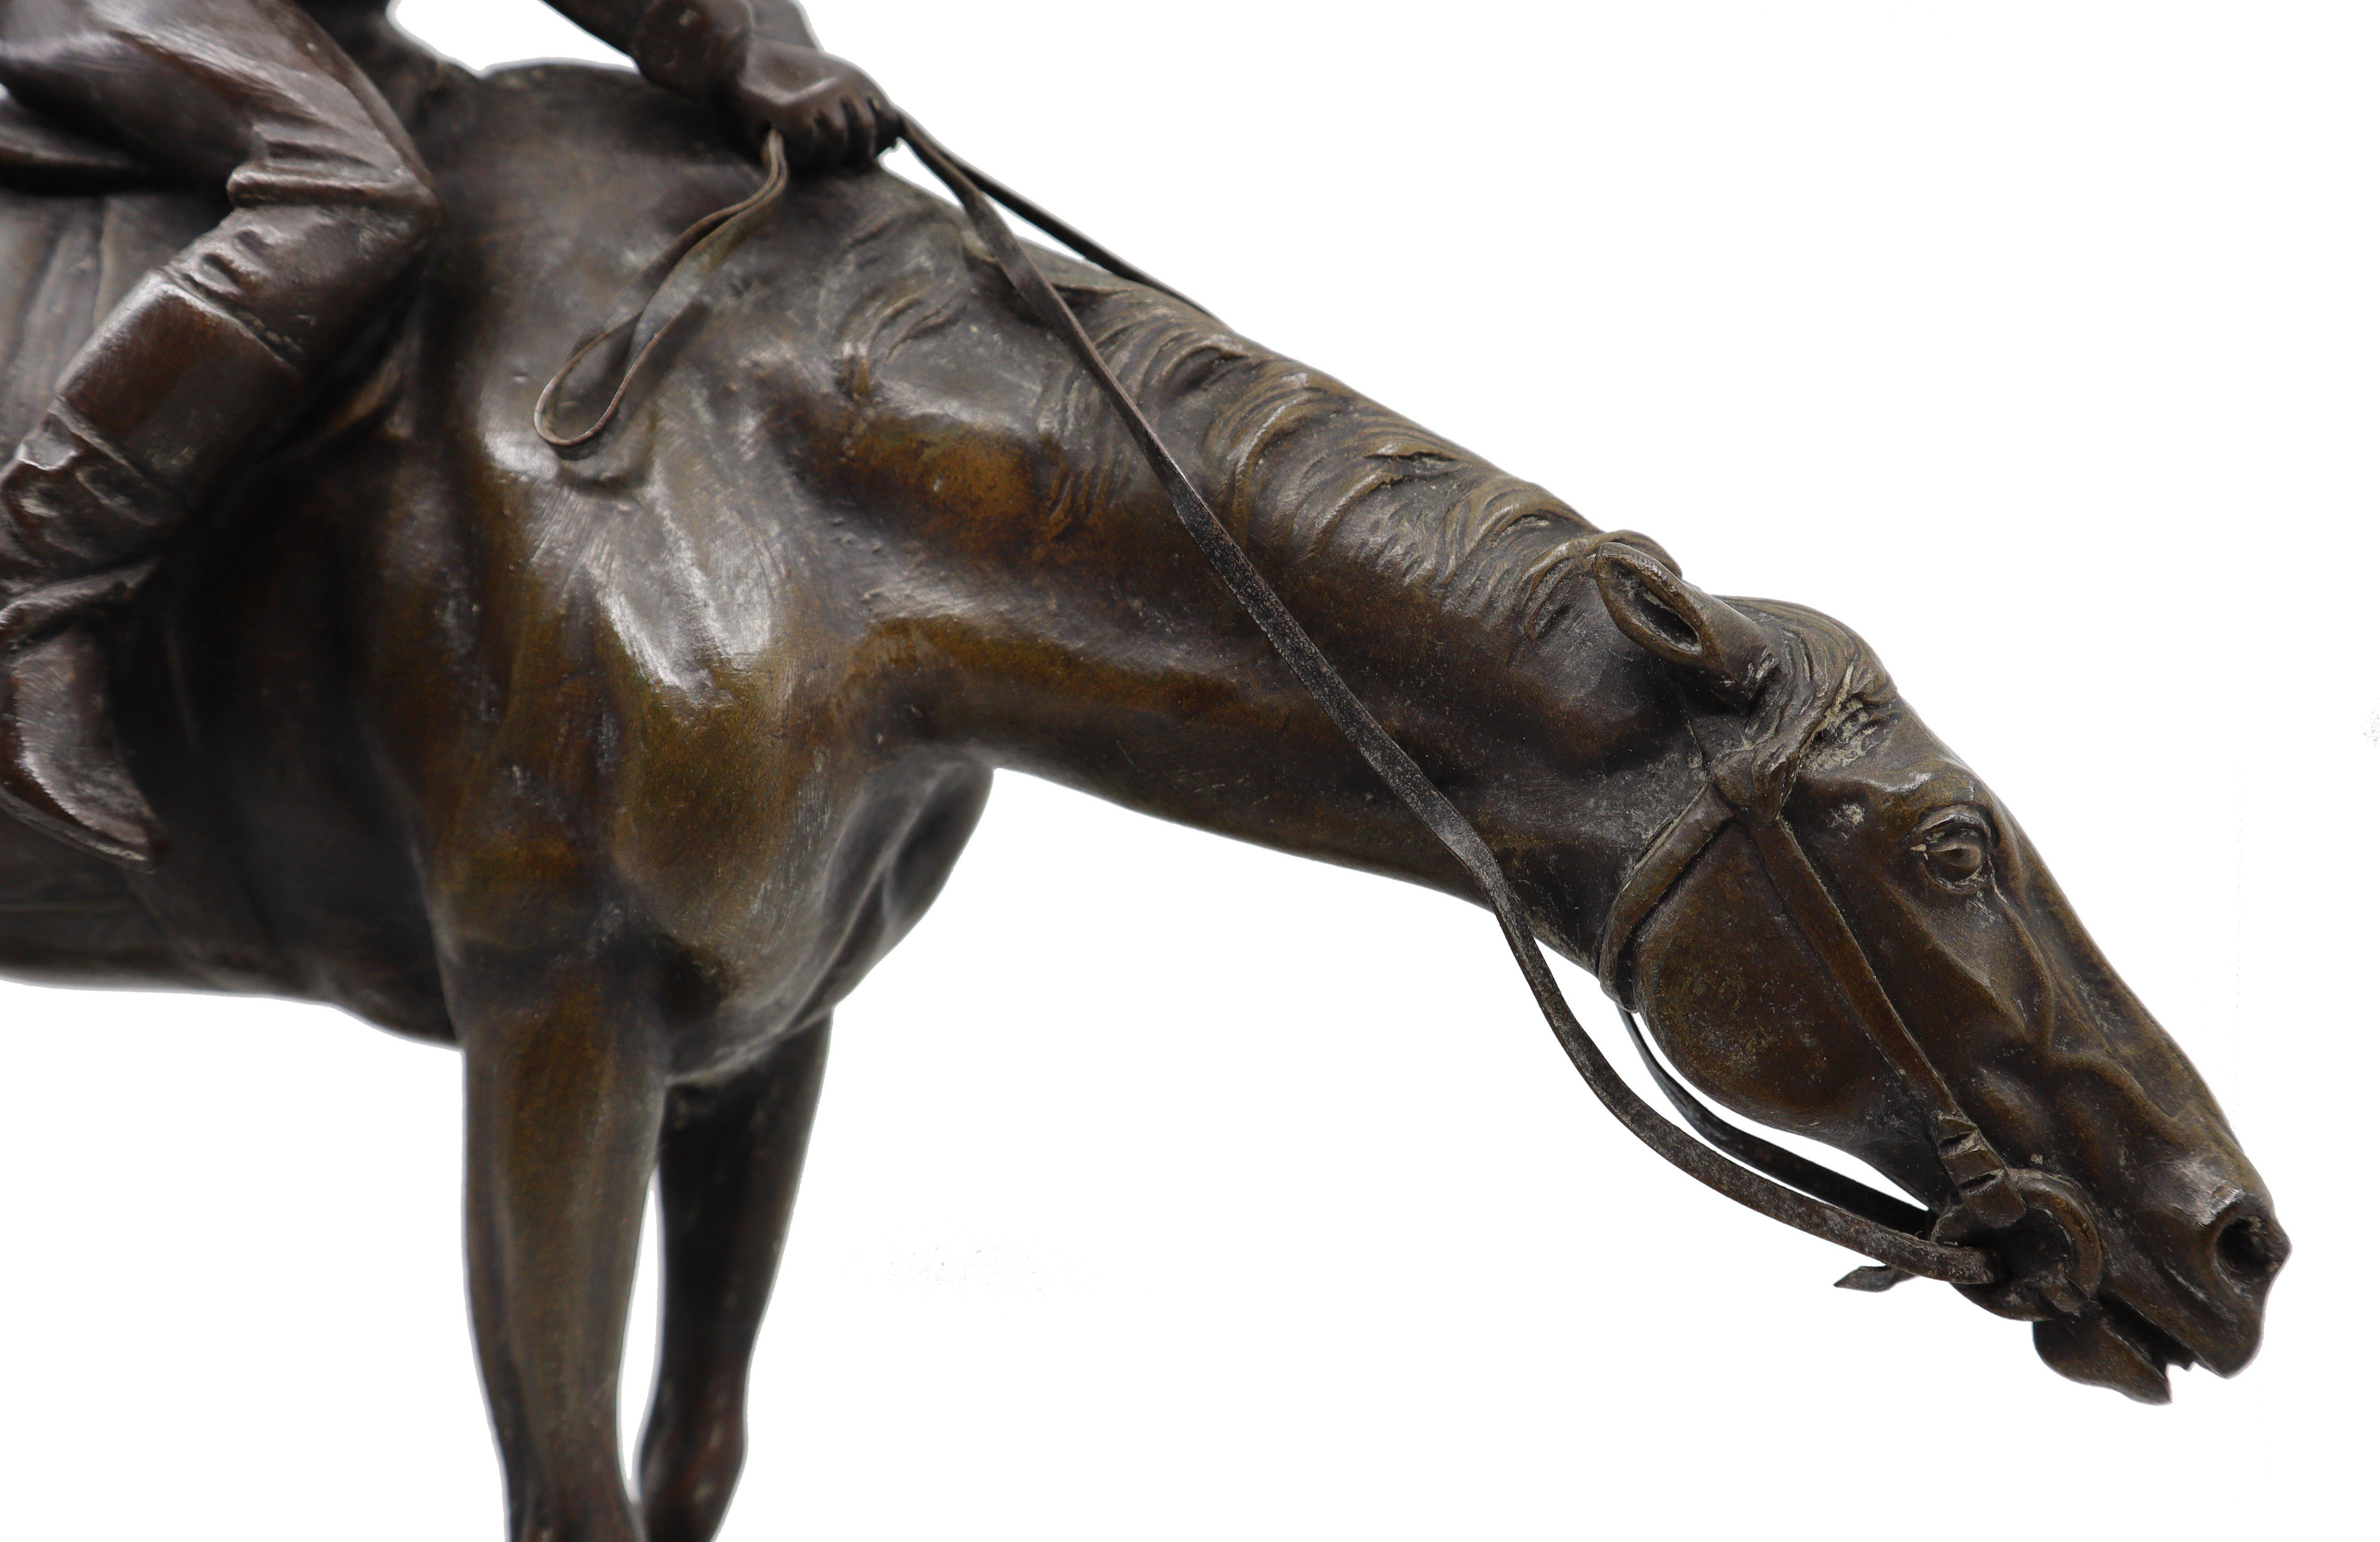 Bronzestatue eines Jockeys auf seinem Pferd vom italienischen Bildhauer G. Ferrari, 19.  
Giuseppe Ferrari war ein italienischer Bildhauer, der 1843 geboren wurde. In seinen Werken stellt er Figuren und Gruppen sehr realistisch dar.

Die Statue ist